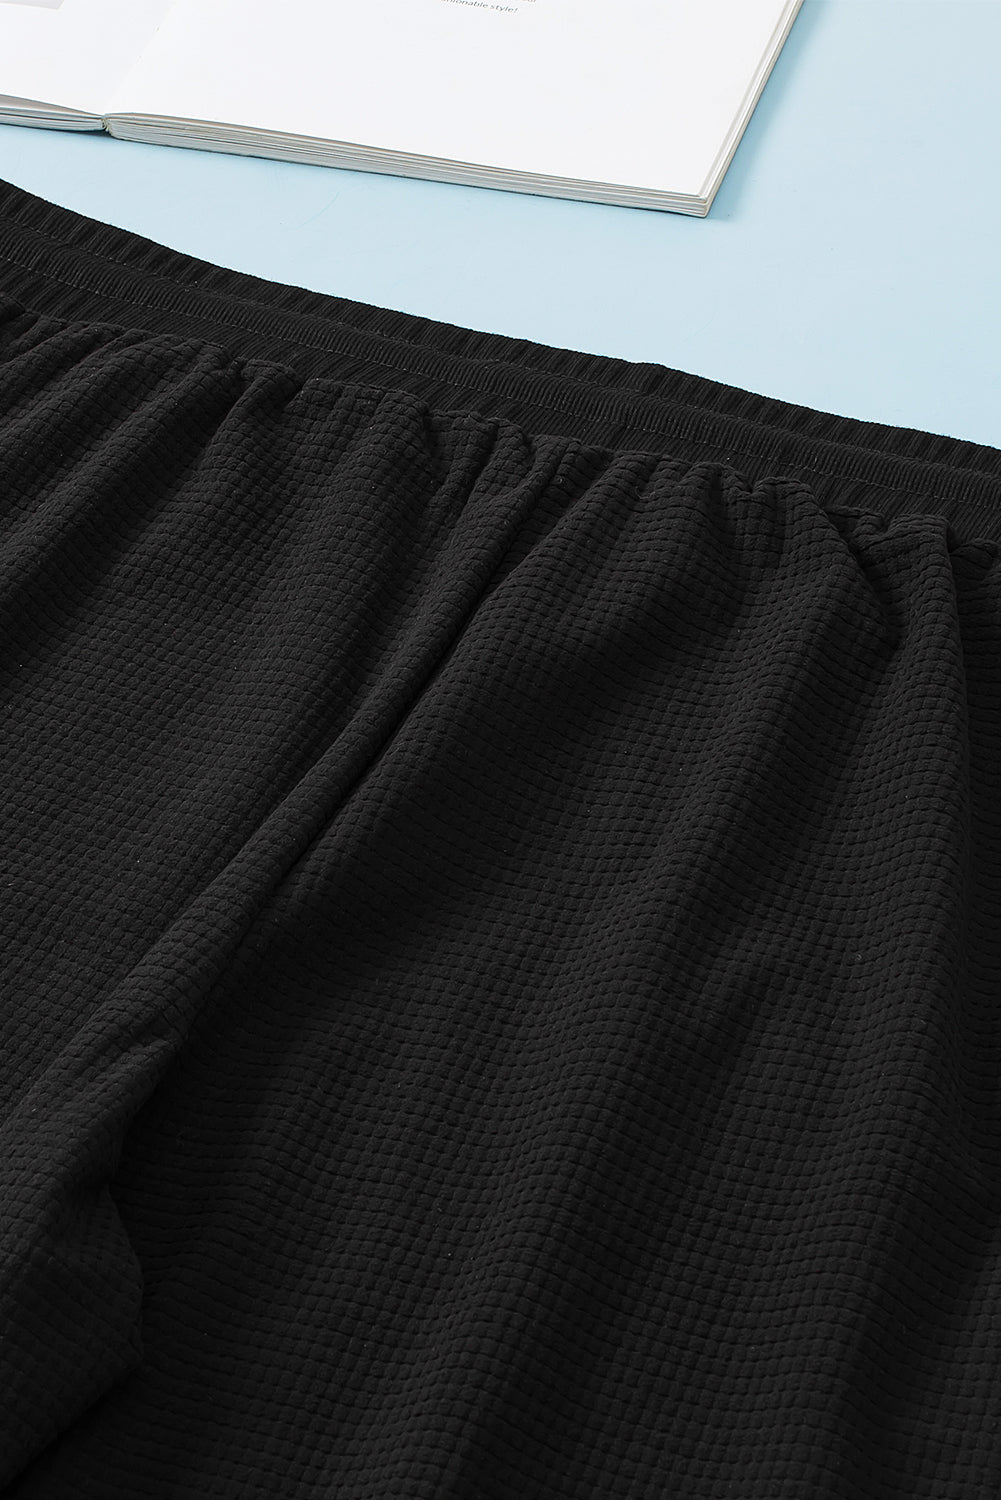 Crne jogger hlače s uzicom i teksturiranim šavovima veće veličine